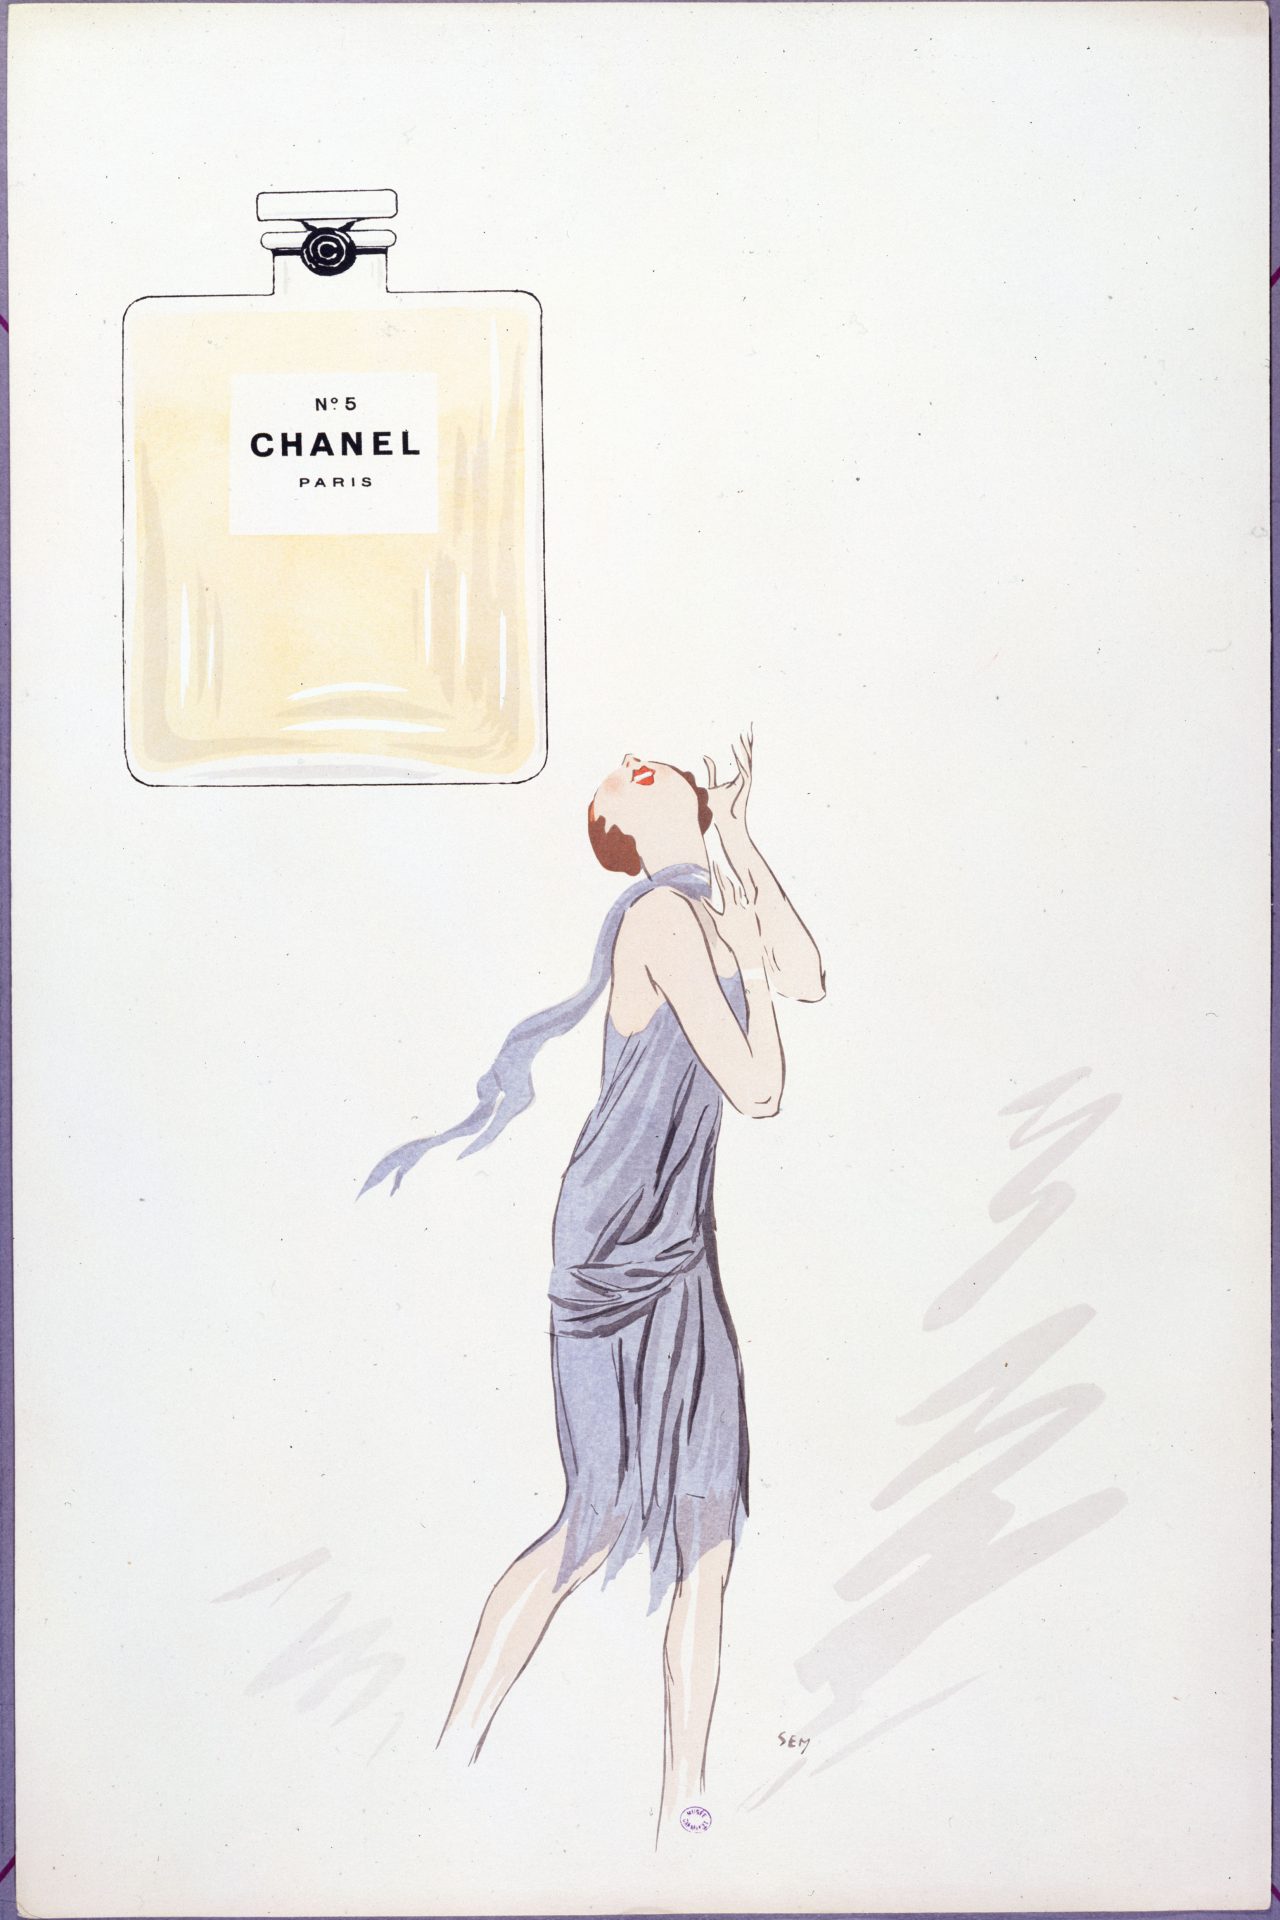 Le parfum Chanel n° 5 a été lancé en 1921